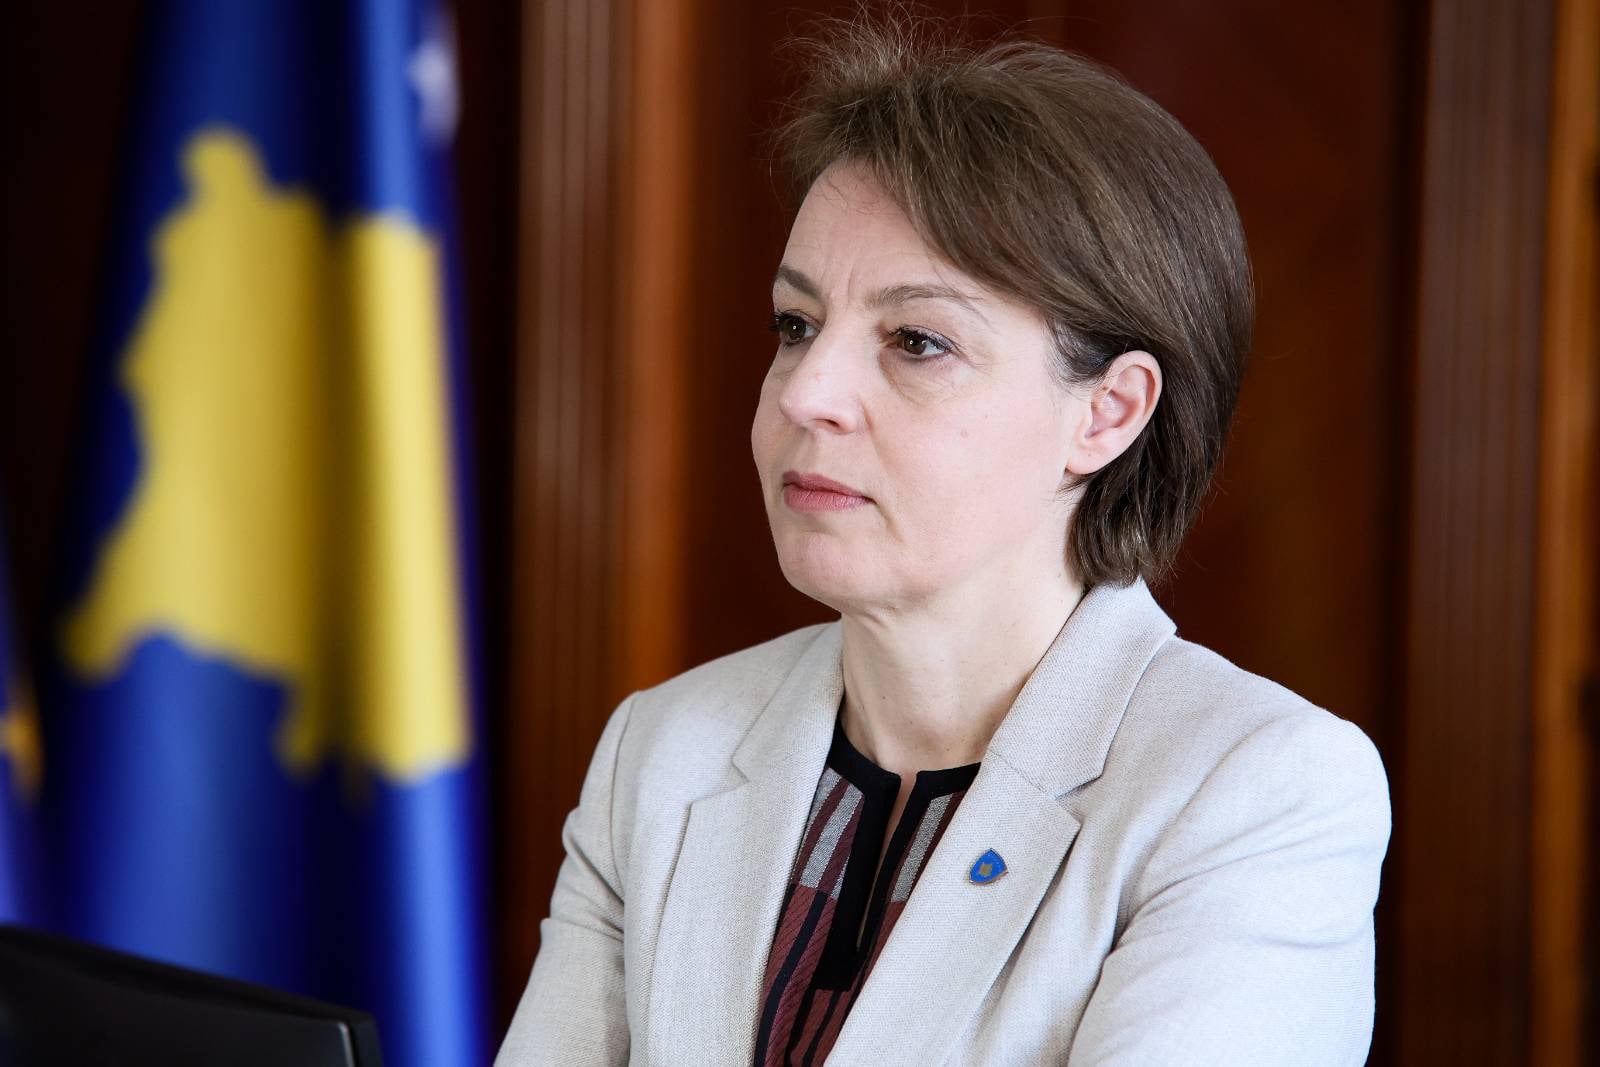 Ministrja e Jashtme dhe Diasporës, Donika Gërvalla - Schwarz